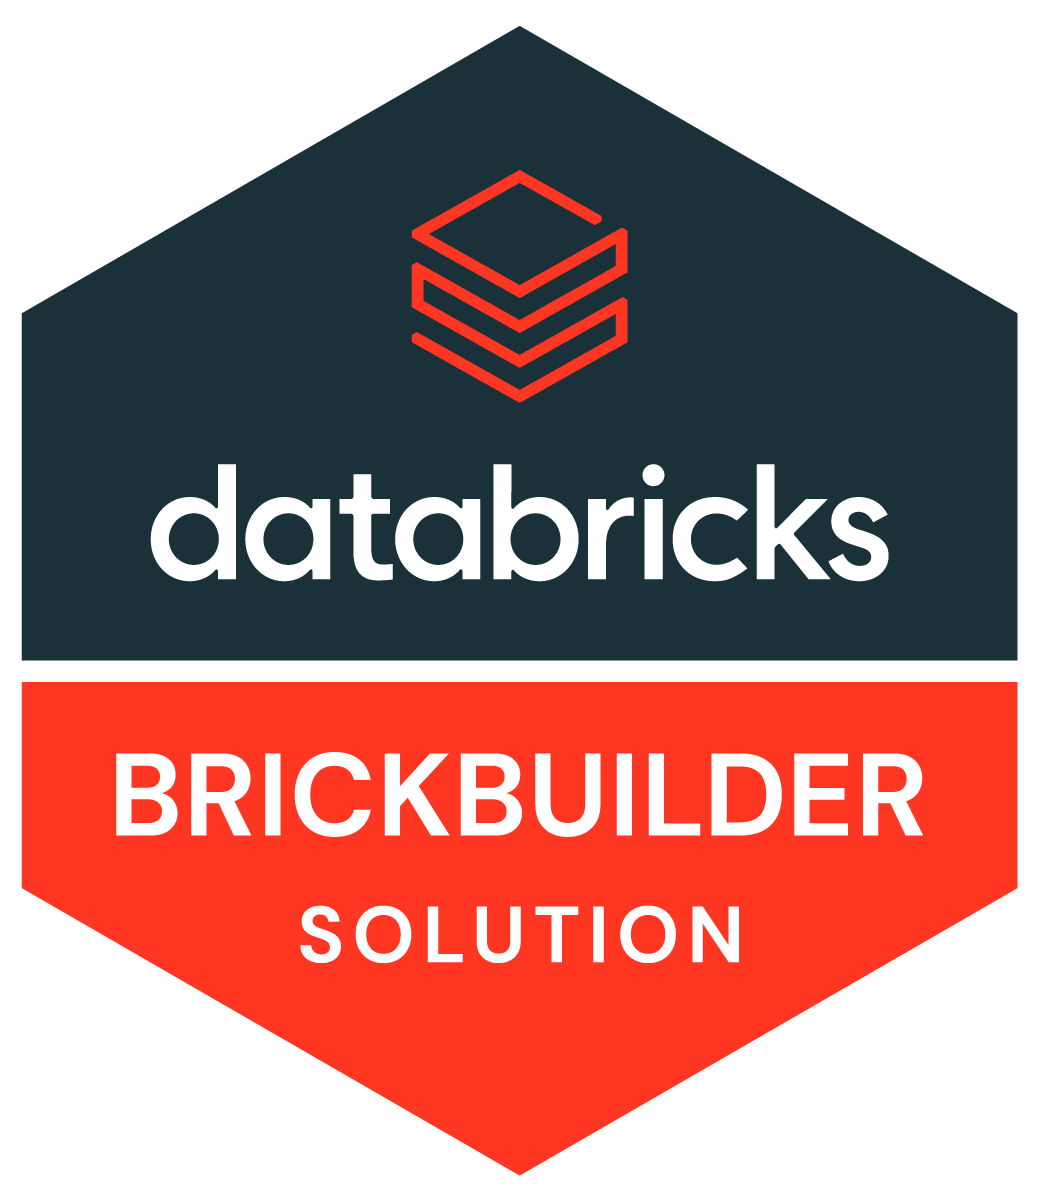 Databricks Brickbuilder solution badge.